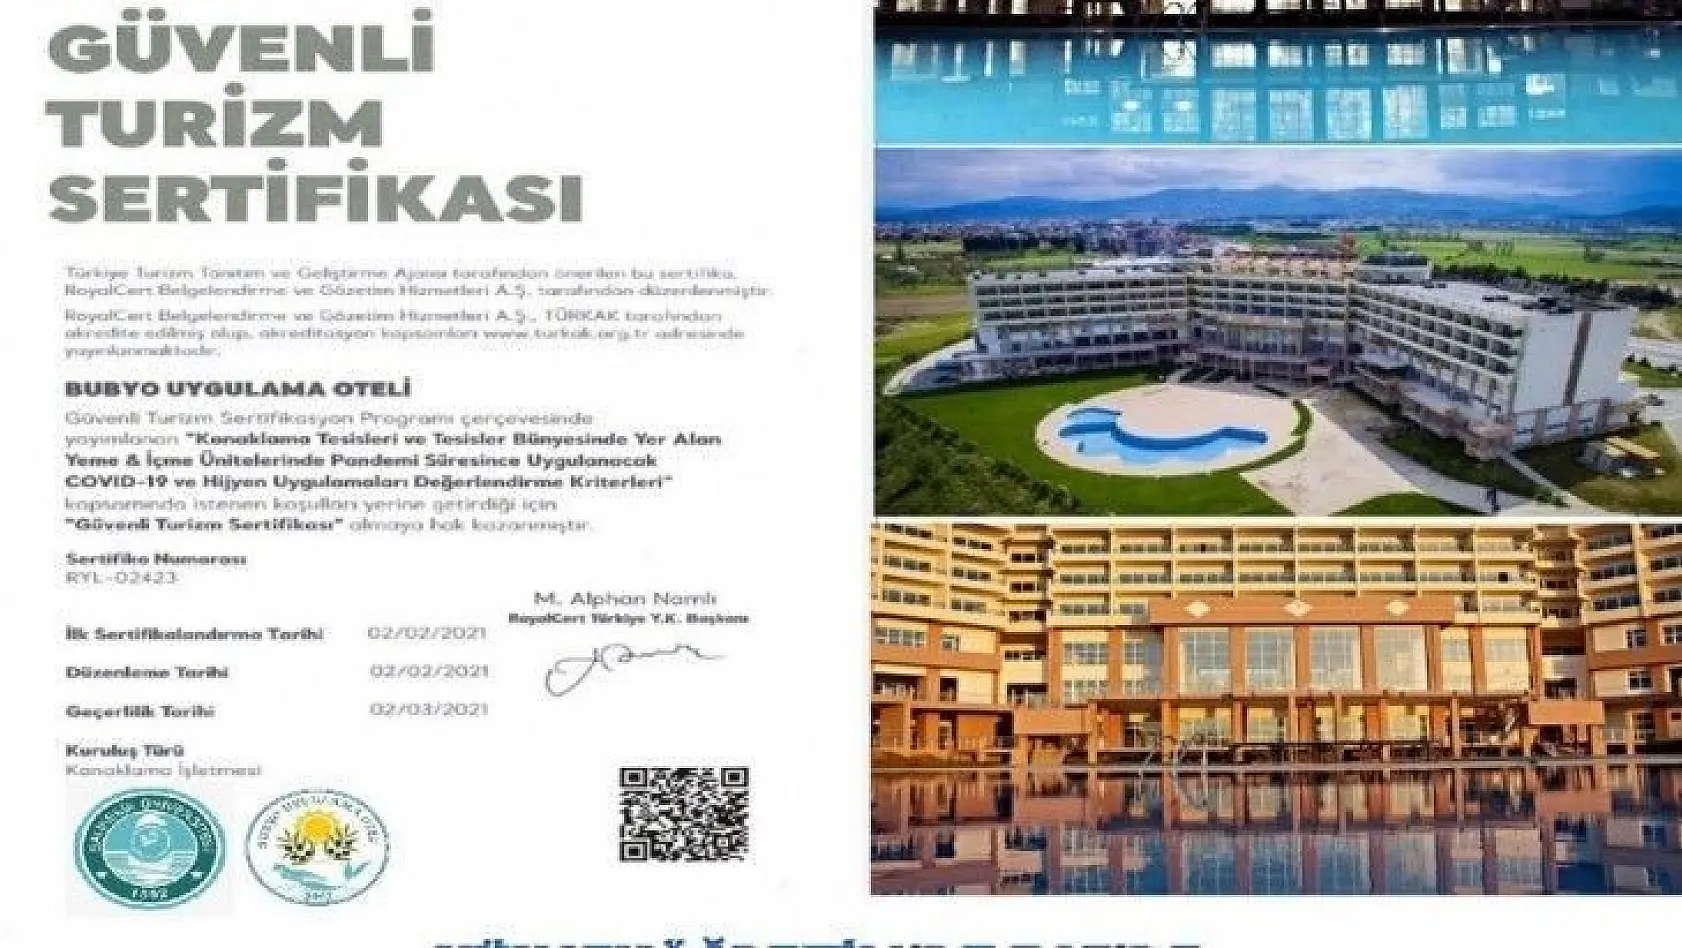 Burhaniye'de BUBYO Uygulama Oteli güvenilir turizmin adresi oldu